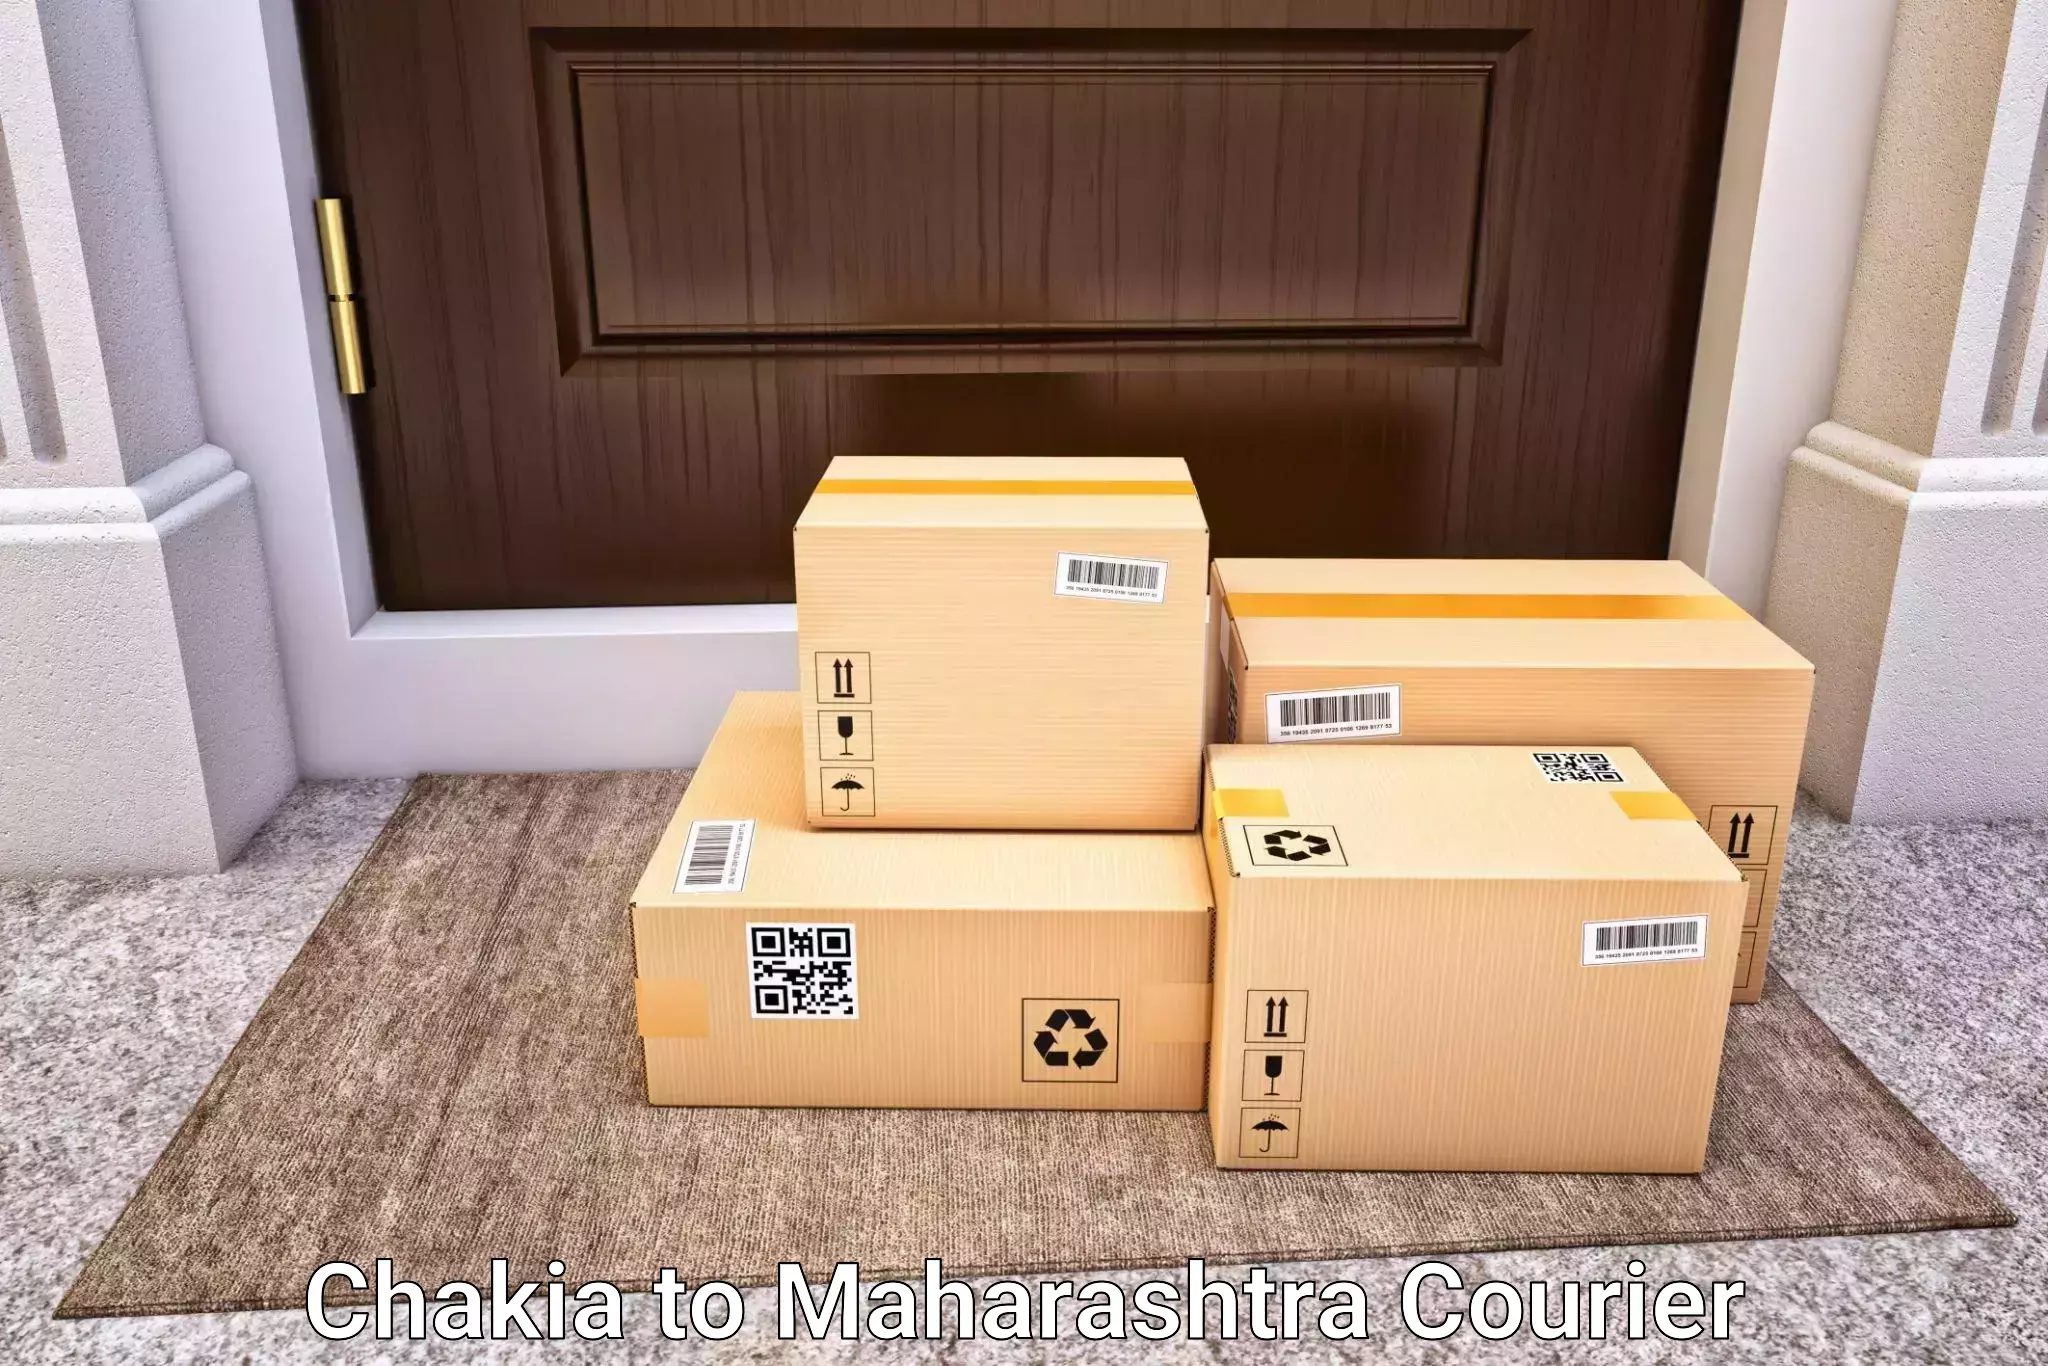 Door-to-door baggage service Chakia to Mahim